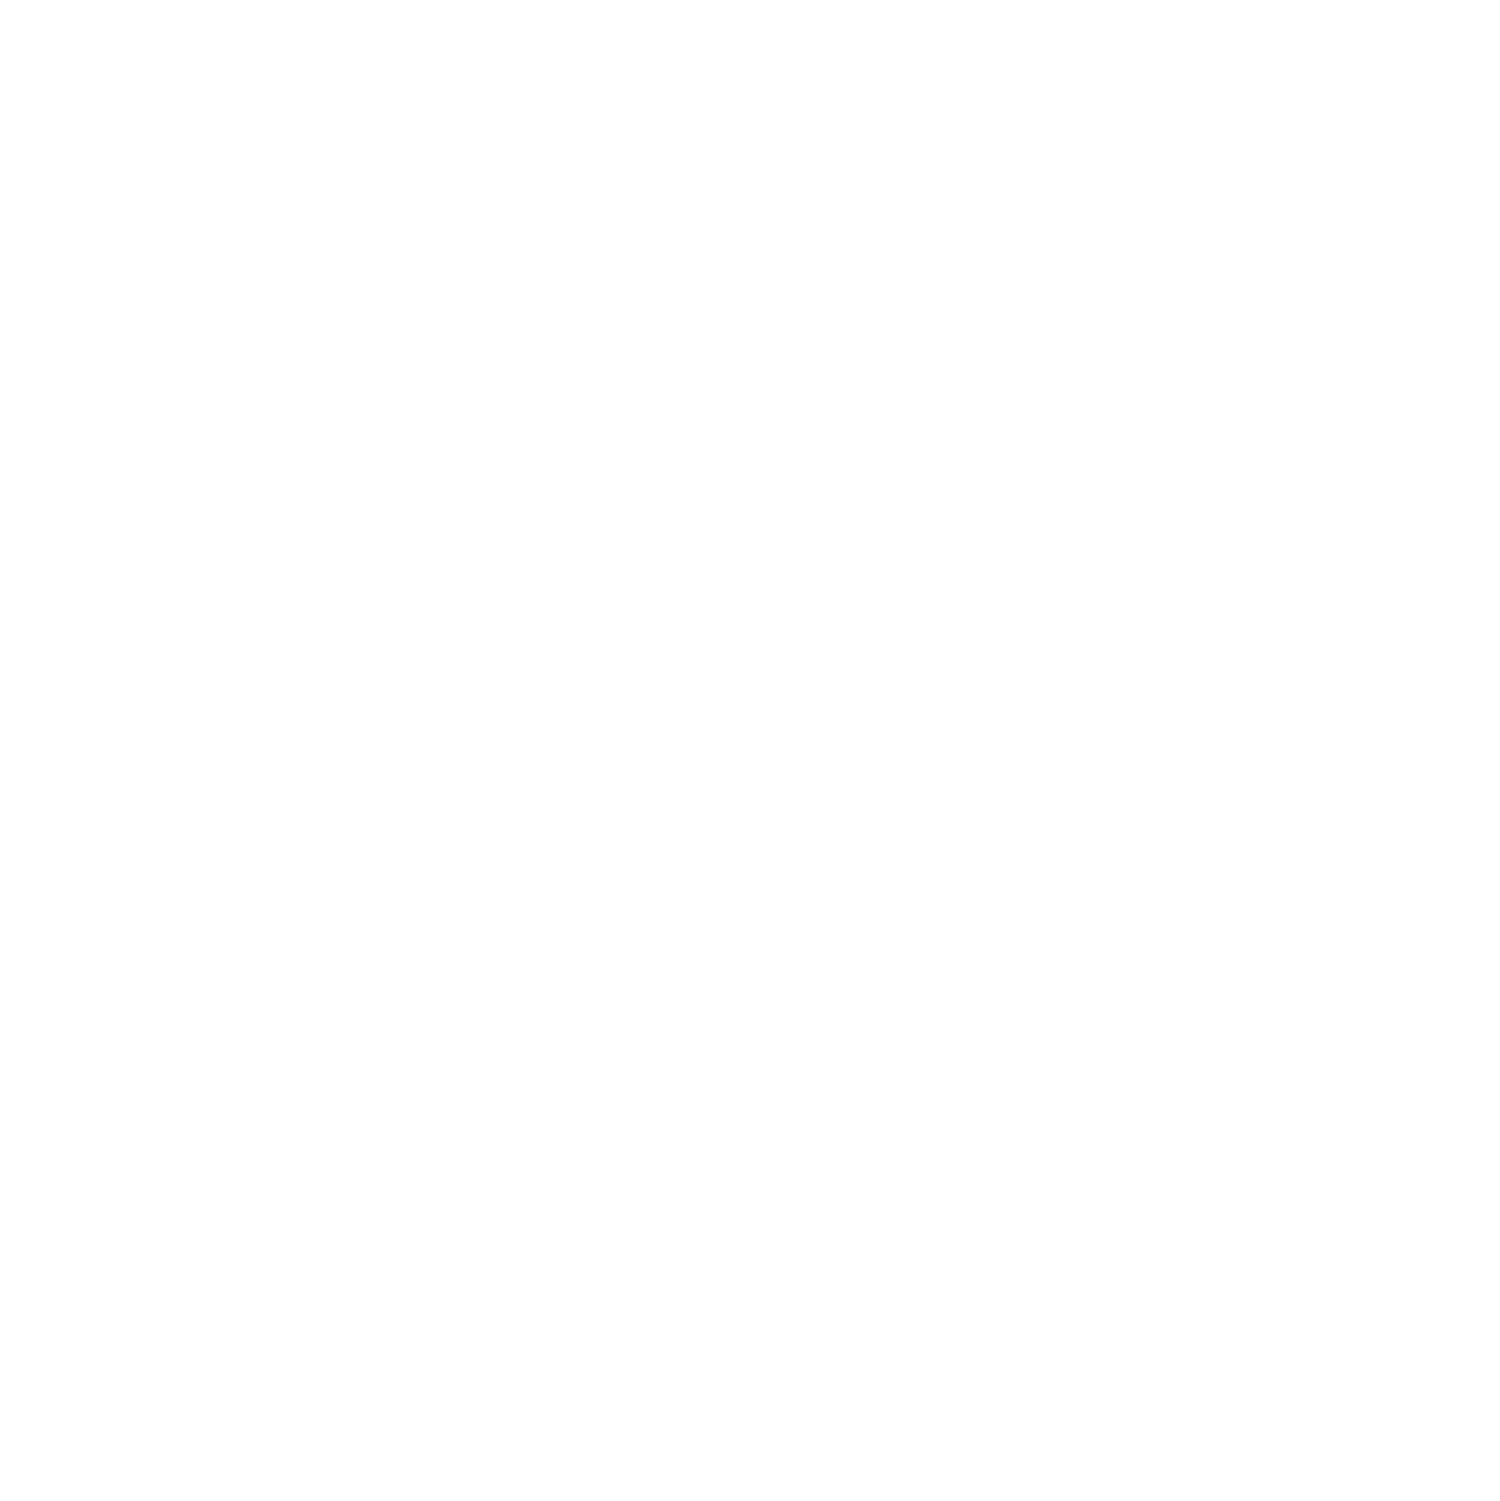 Firm Foundation Church